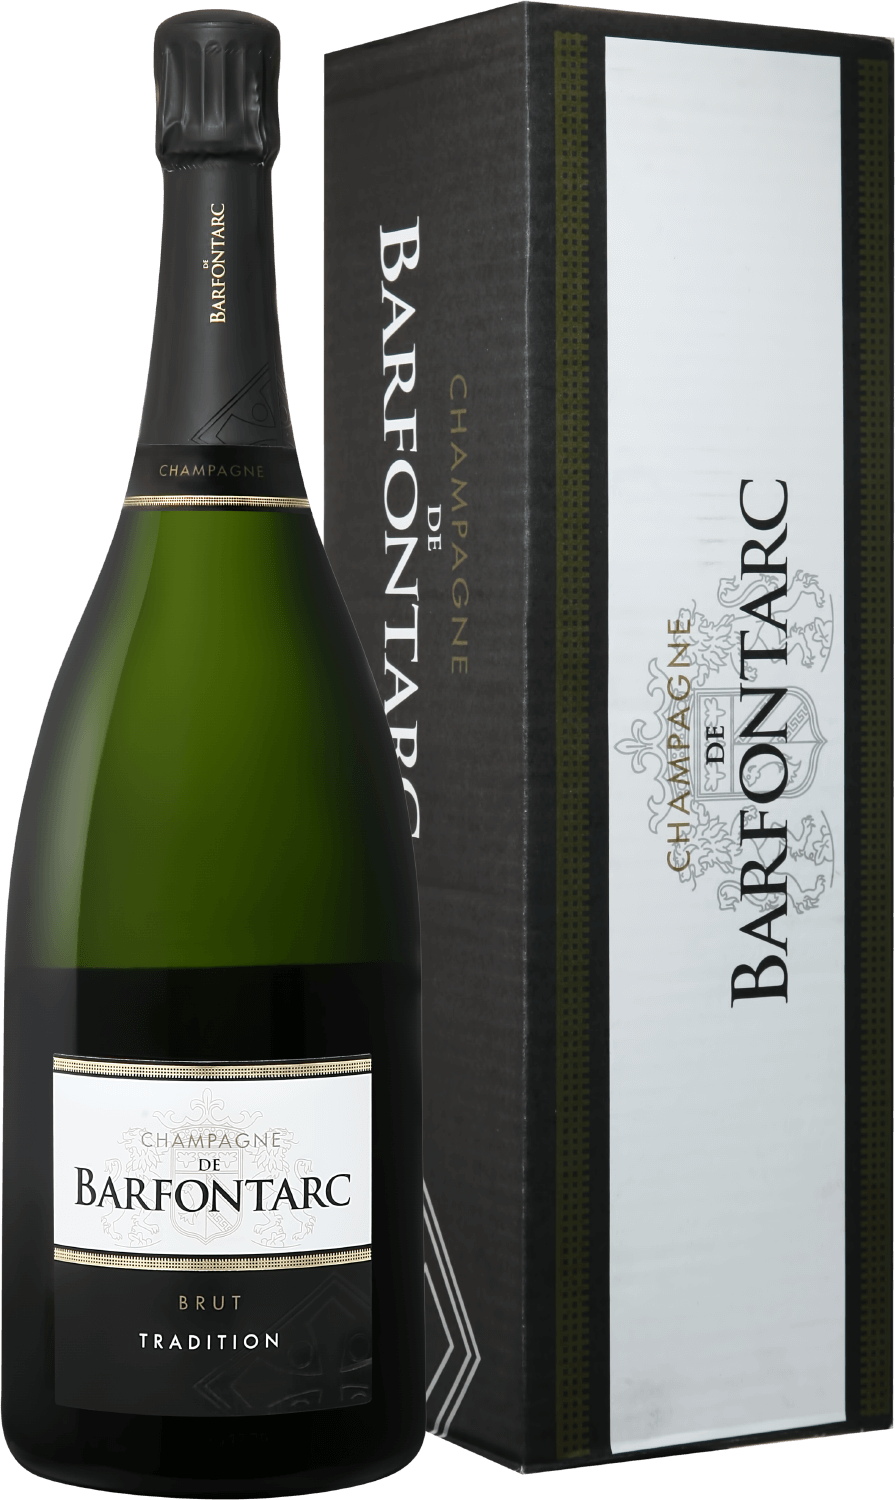 Barfontarc Tradition Brut Champagne АOC Coopérative Vinicole de la Région de Baroville (gift box) eugene iii tradition brut champagne аoc coopérative vinicole de la région de baroville